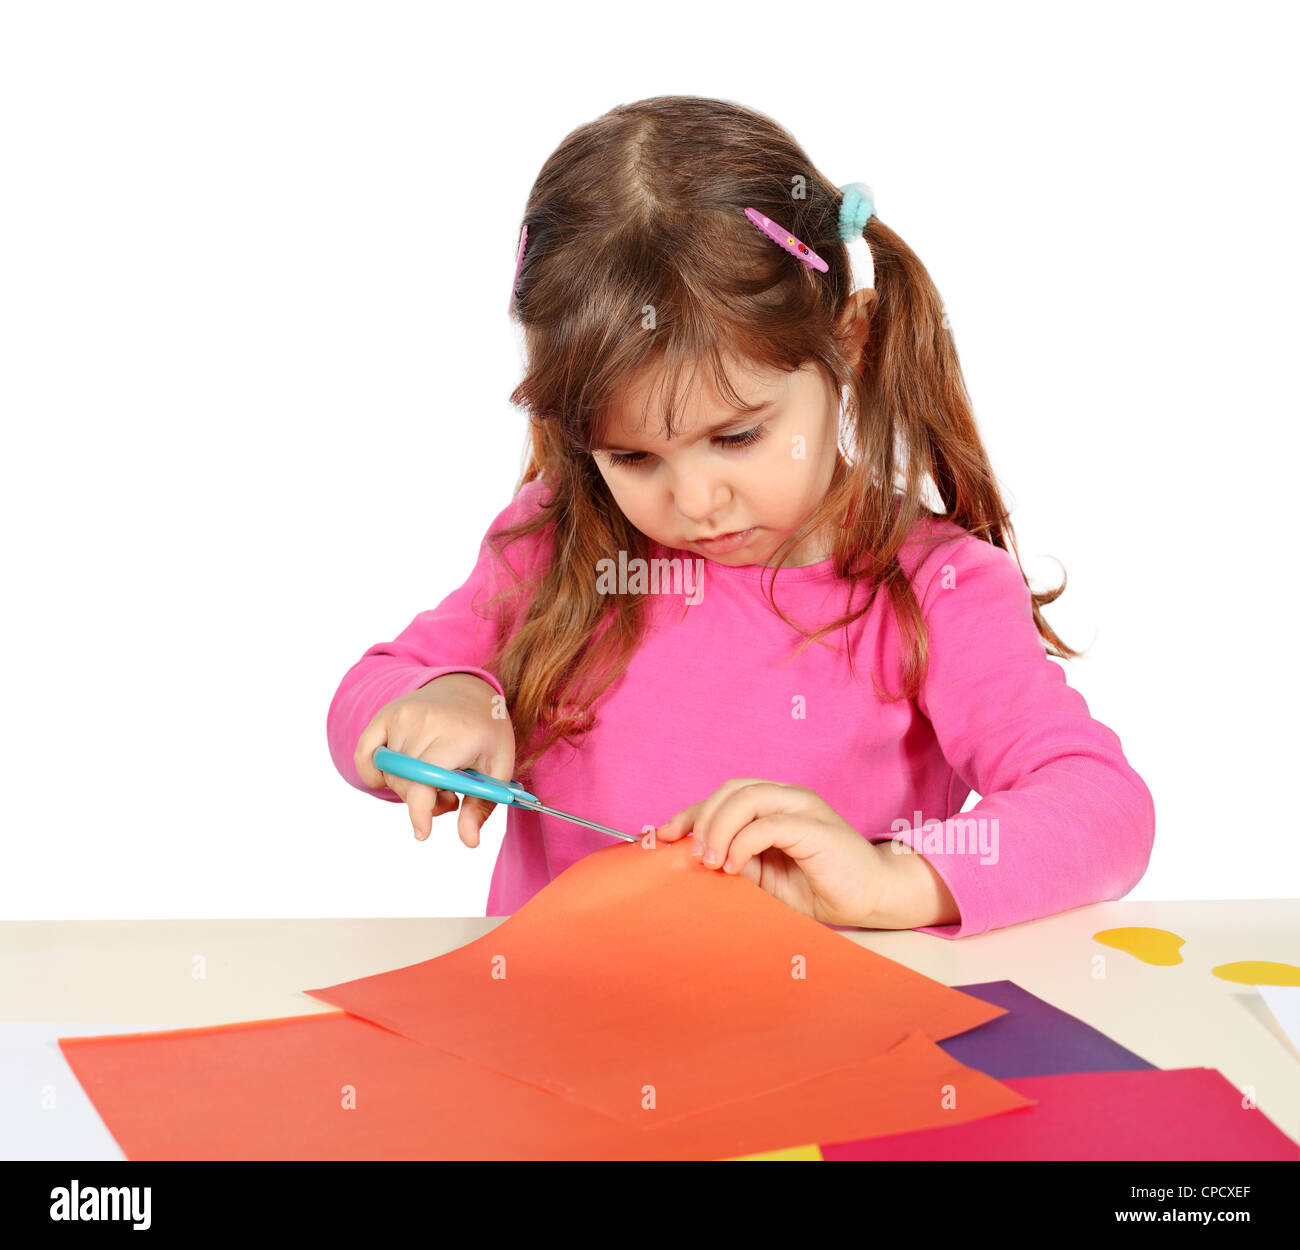 Kleines Kind Mädchen machen einen Ausschnitt mit einer Schere  Stockfotografie - Alamy